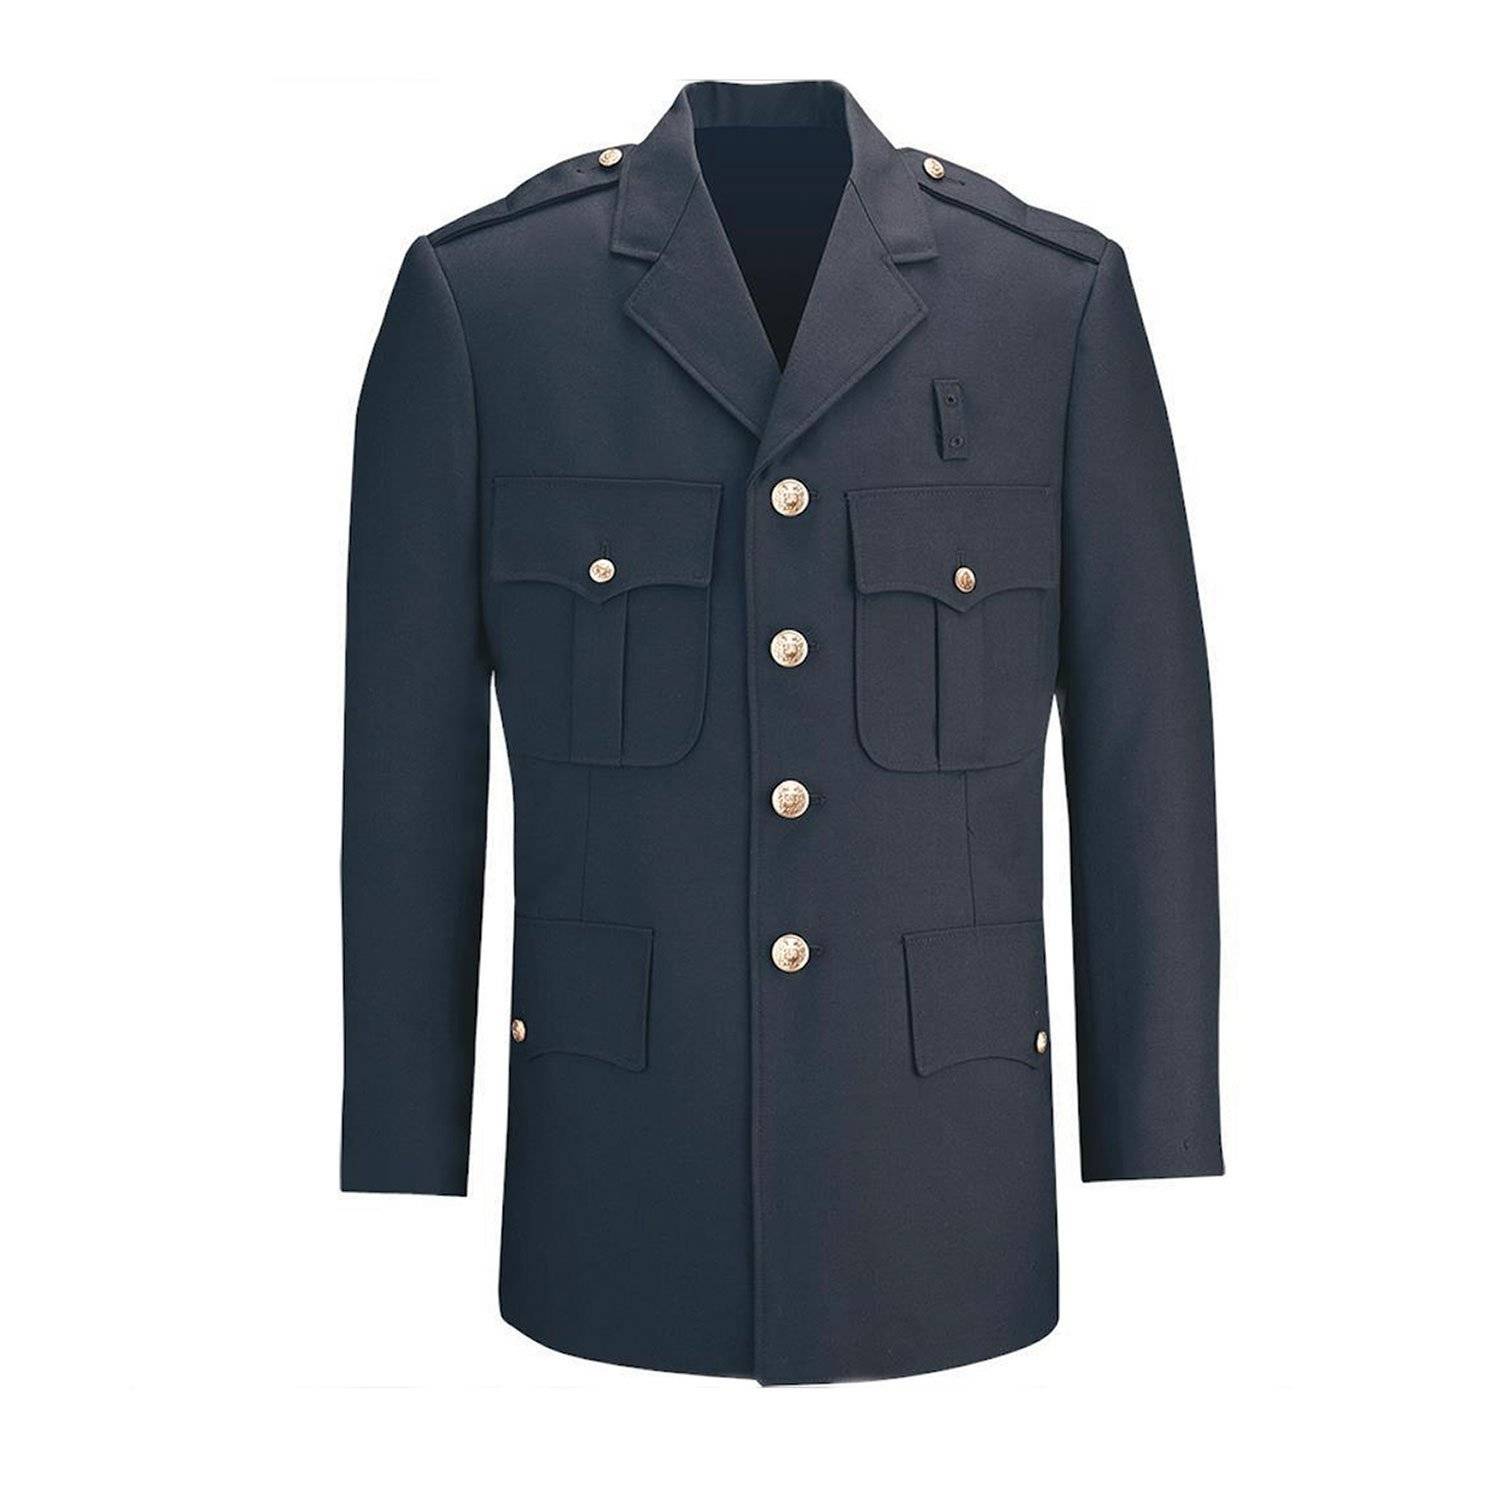 Flying Cross Women's Command 100% Polyester Dress Coat